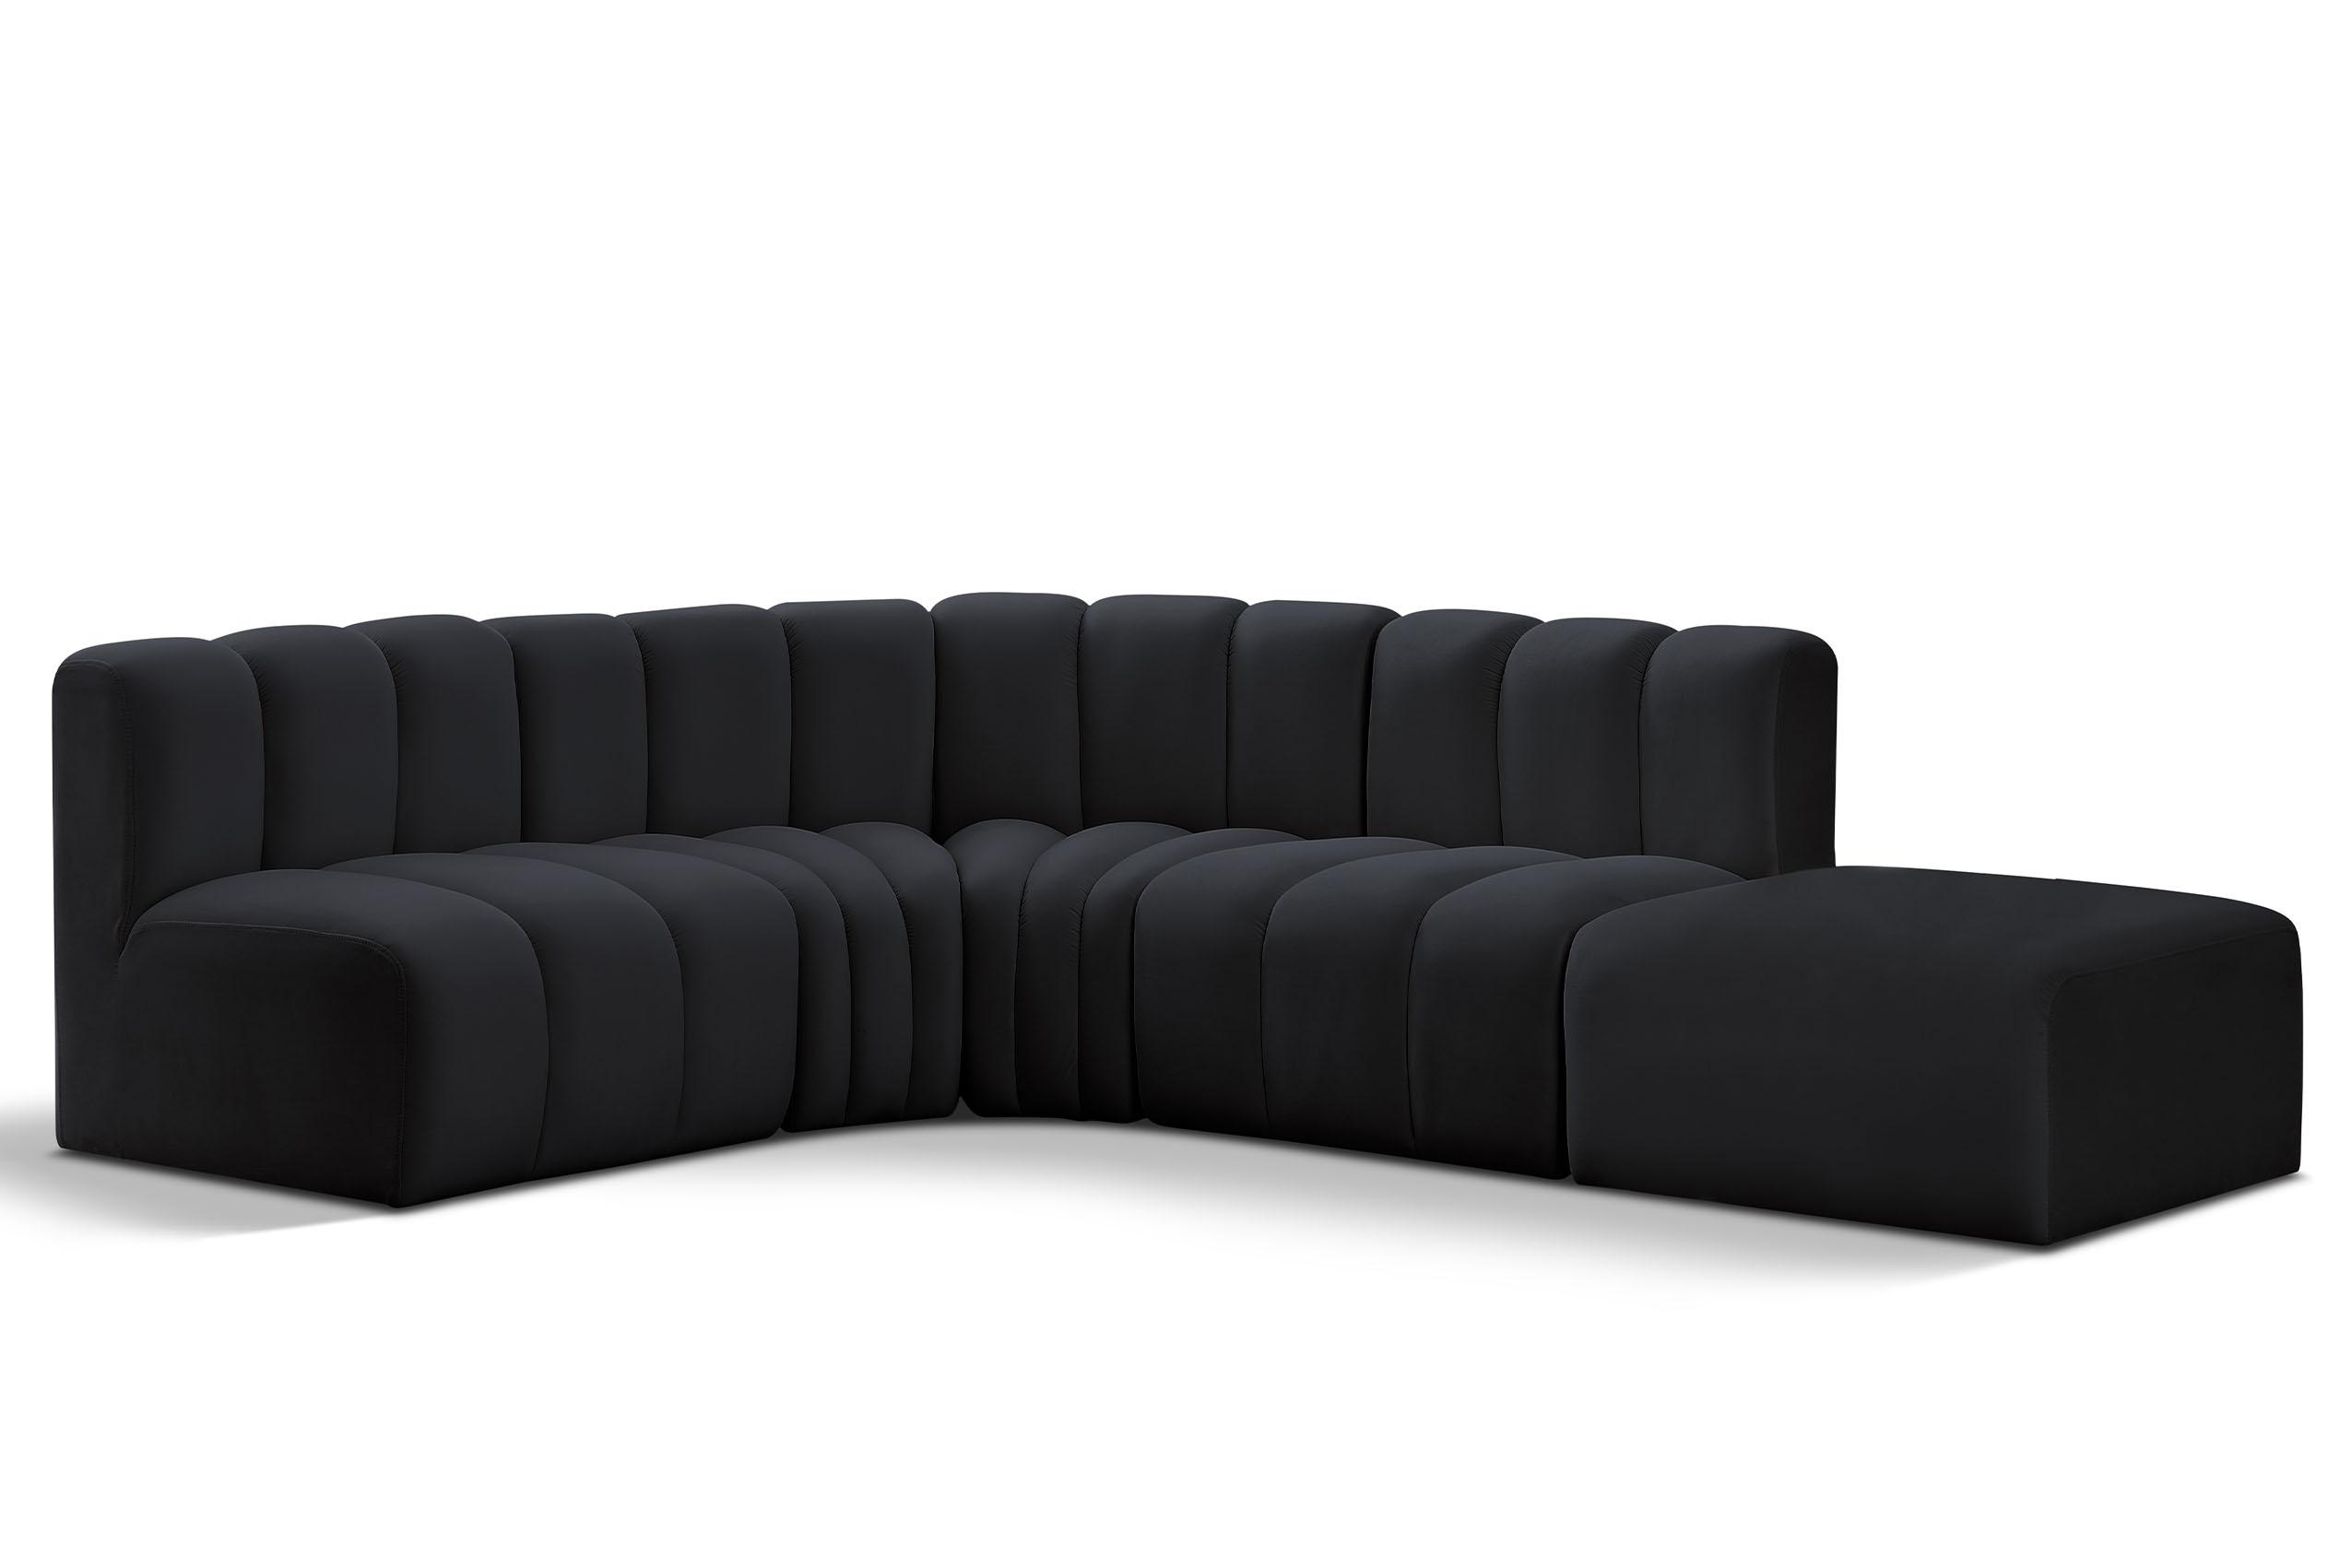 Contemporary, Modern Modular Sectional Sofa ARC 103Black-S5C 103Black-S5C in Black Velvet